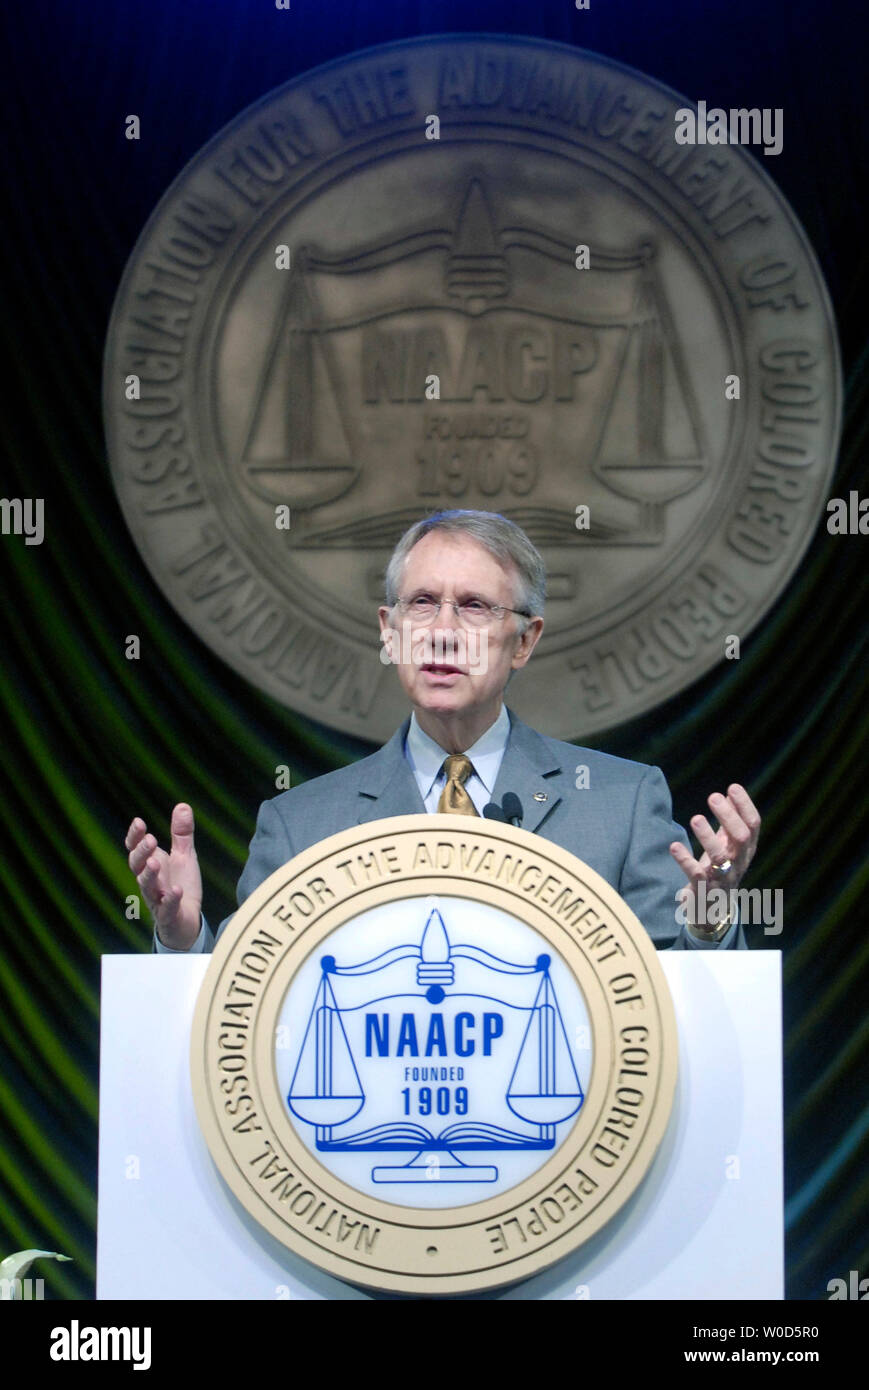 Senato leader della minoranza Harry Reid (D-NEV) parla al NAACP conferenza a Washington il 17 luglio 2006. Reid ha parlato sul significato storico della NAACP e ha parlato della necessità di ripristinare i diritti di voto di agire. (UPI foto/Kevin Dietsch) Foto Stock